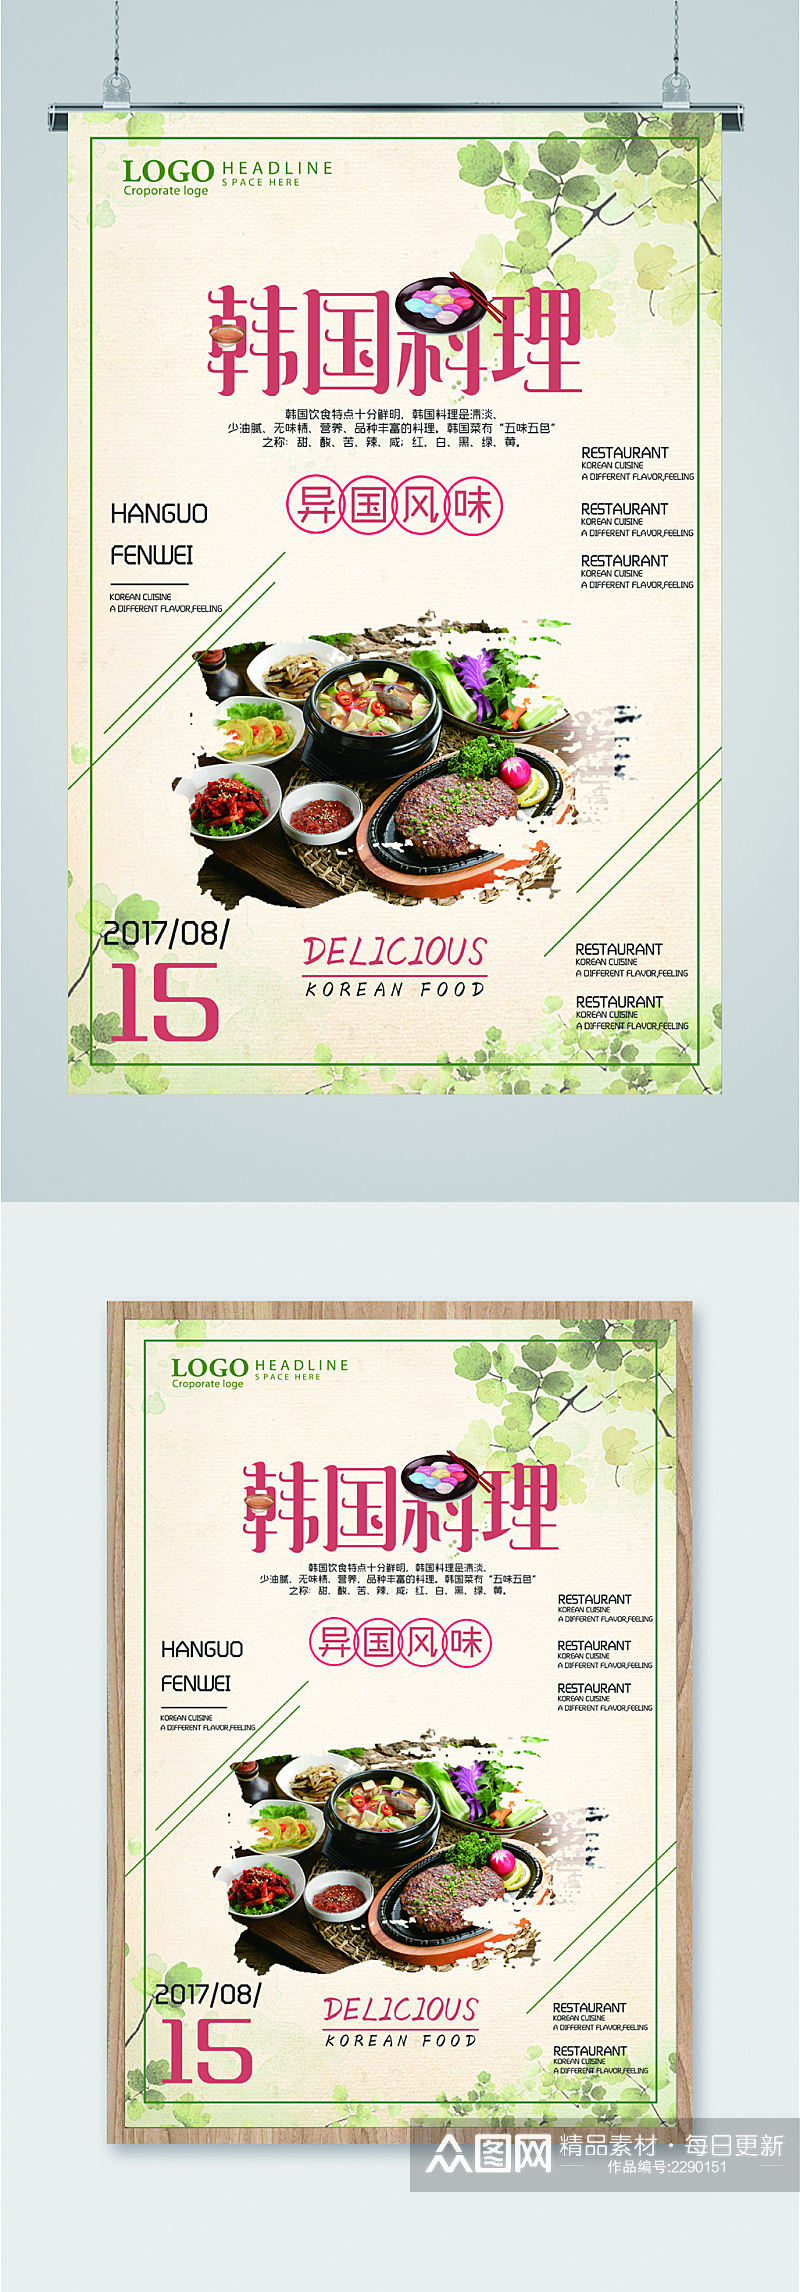 韩国料理异国风情海报素材